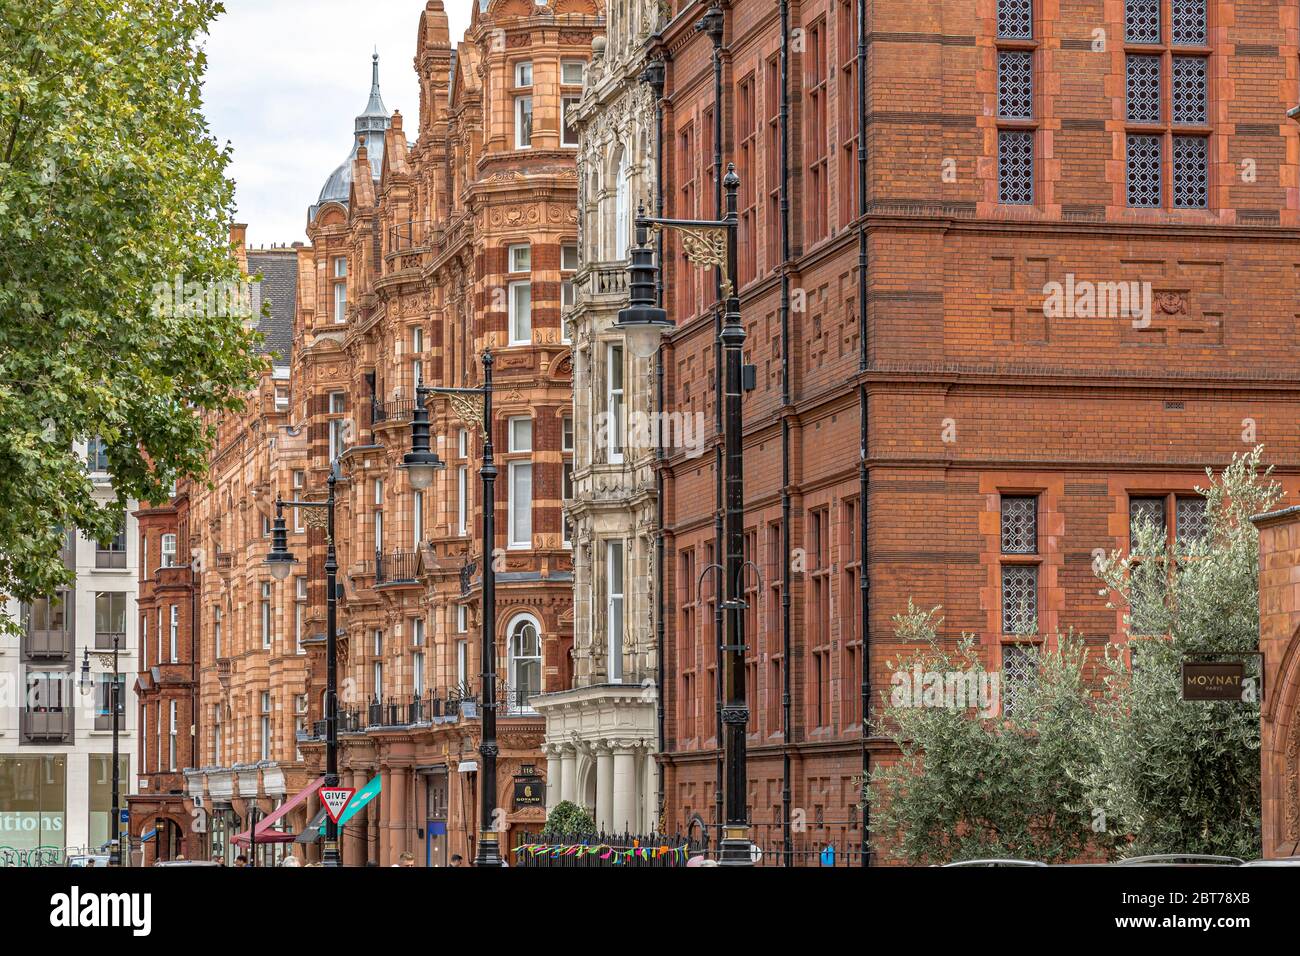 Architecture de style Queen Anne de Mount Street , une rue prestigieuse est-ouest, rue à Mayfair,Londres W1 Banque D'Images